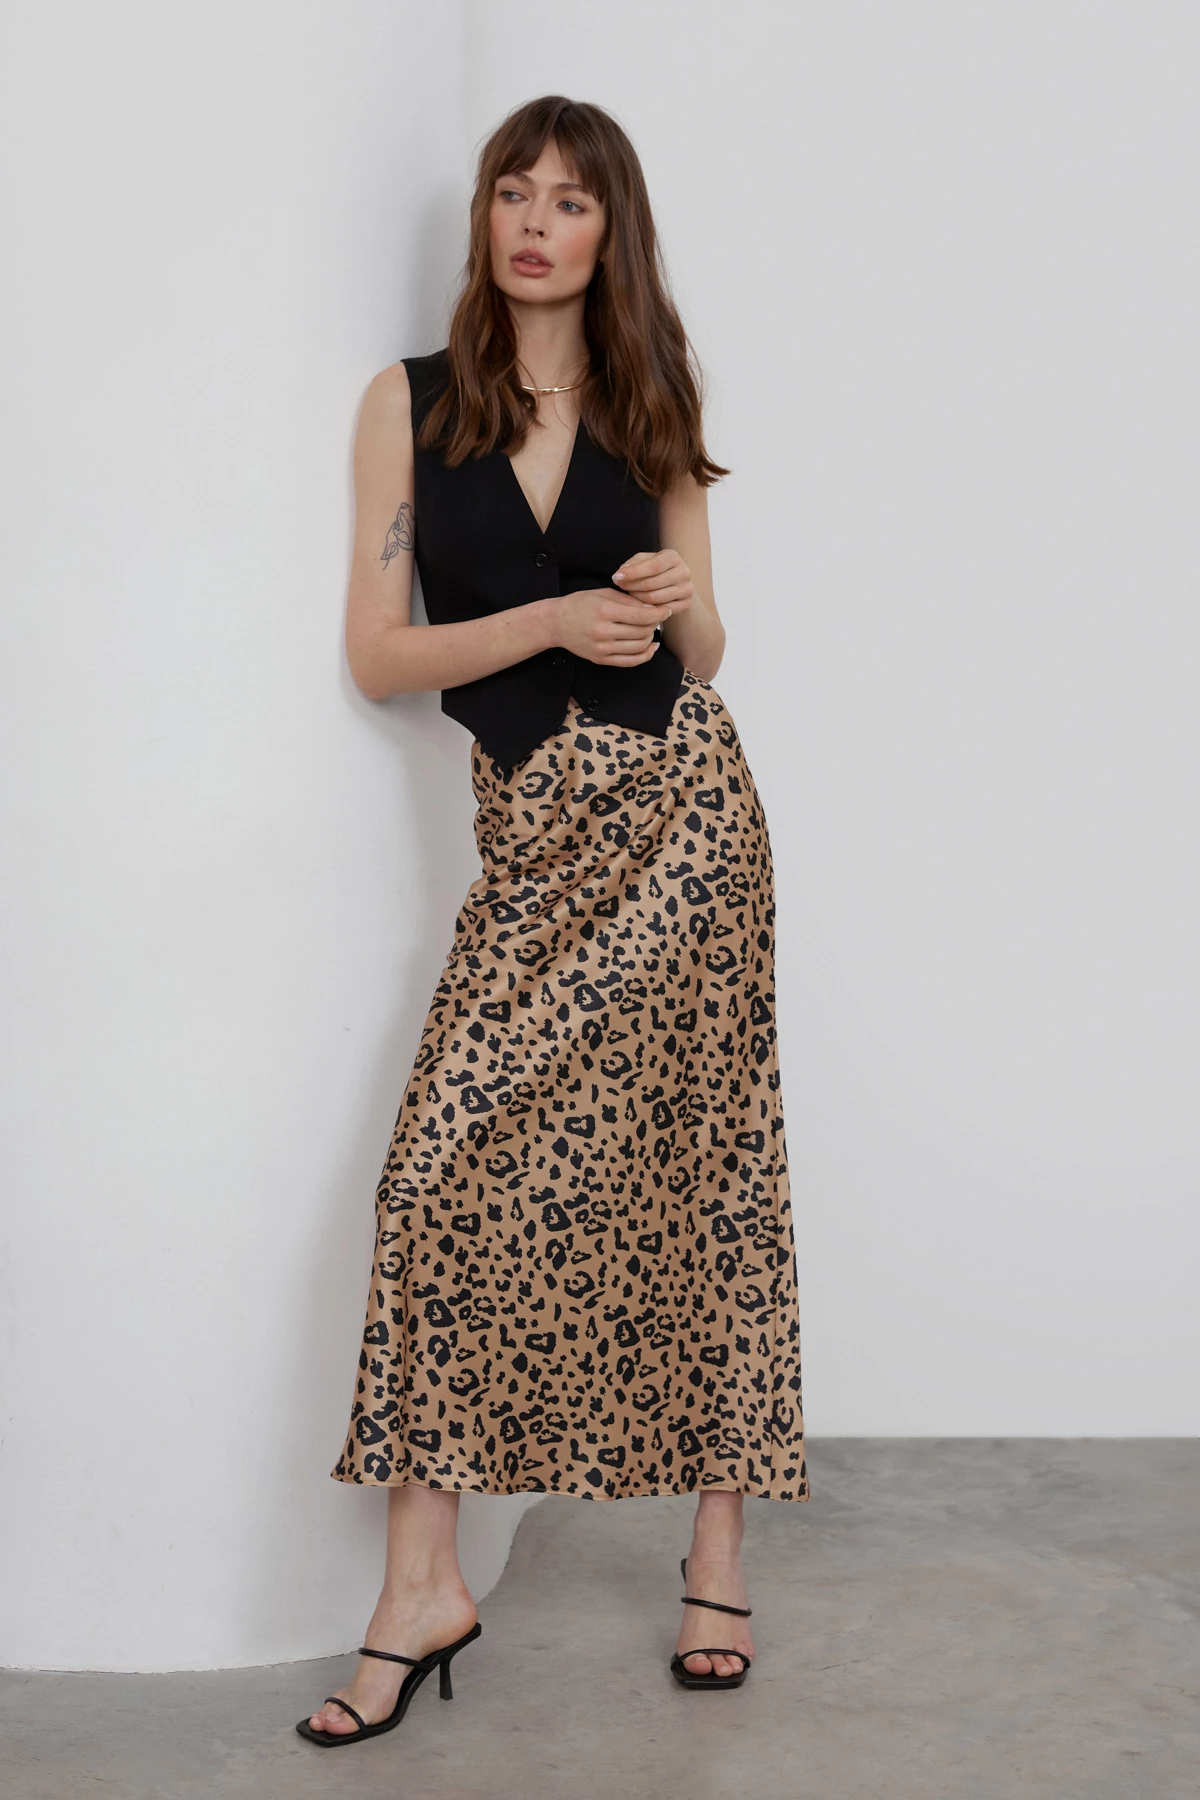 Сатиновая юбка длины среднее миди в принт "леопард", фото 1